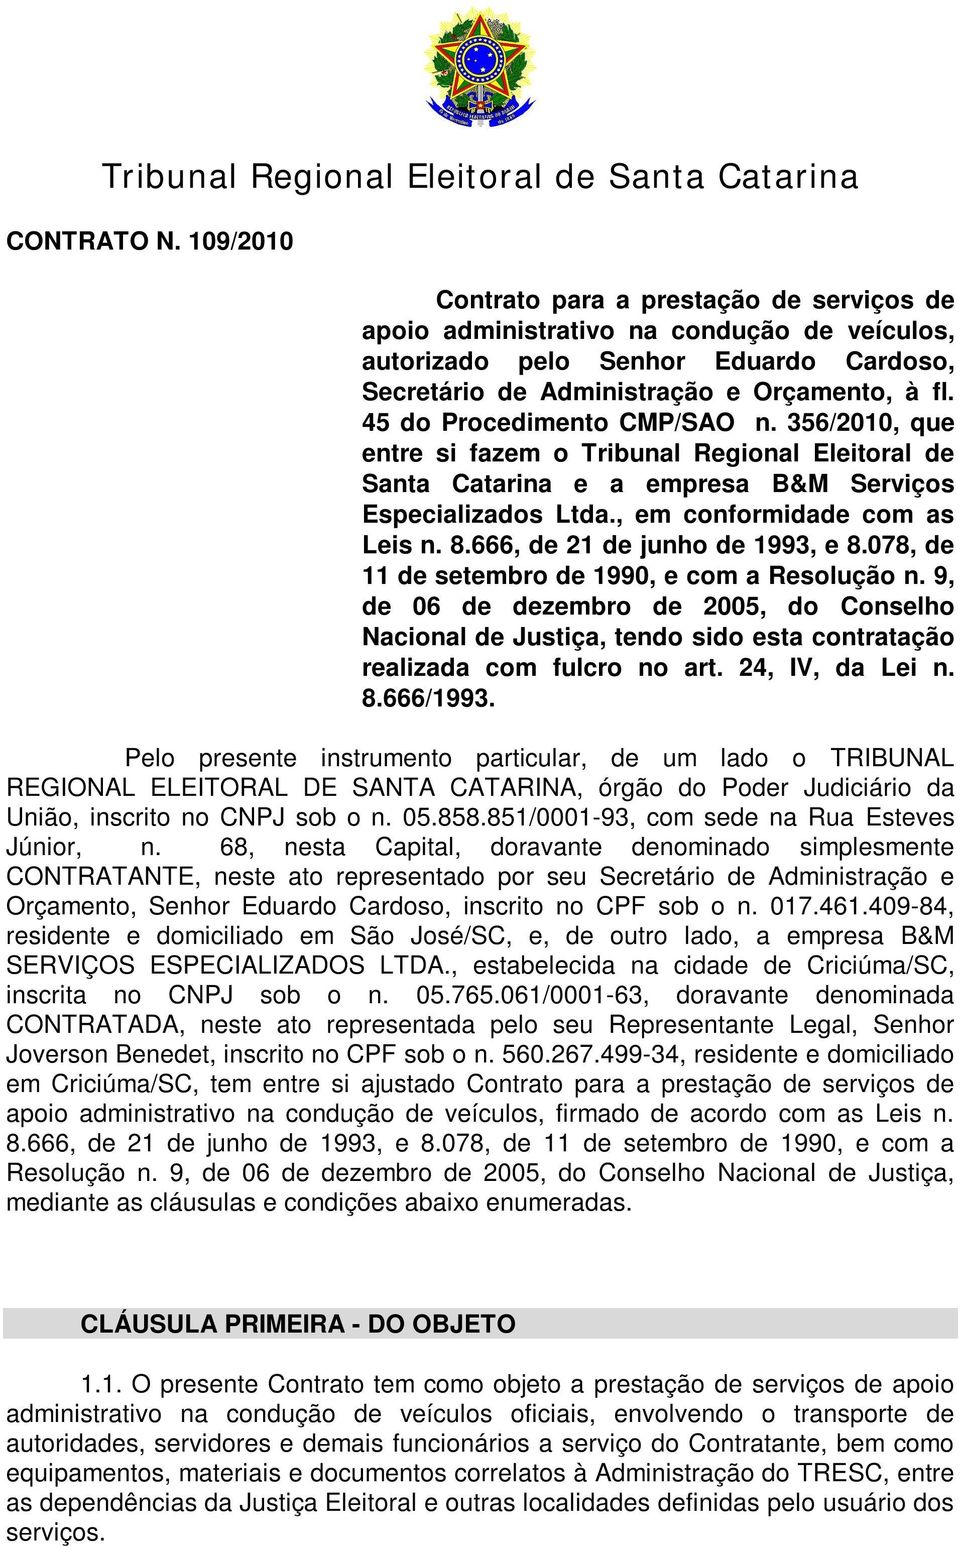 45 do Procedimento CMP/SAO n. 356/2010, que entre si fazem o Tribunal Regional Eleitoral de Santa Catarina e a empresa B&M Serviços Especializados Ltda., em conformidade com as Leis n. 8.